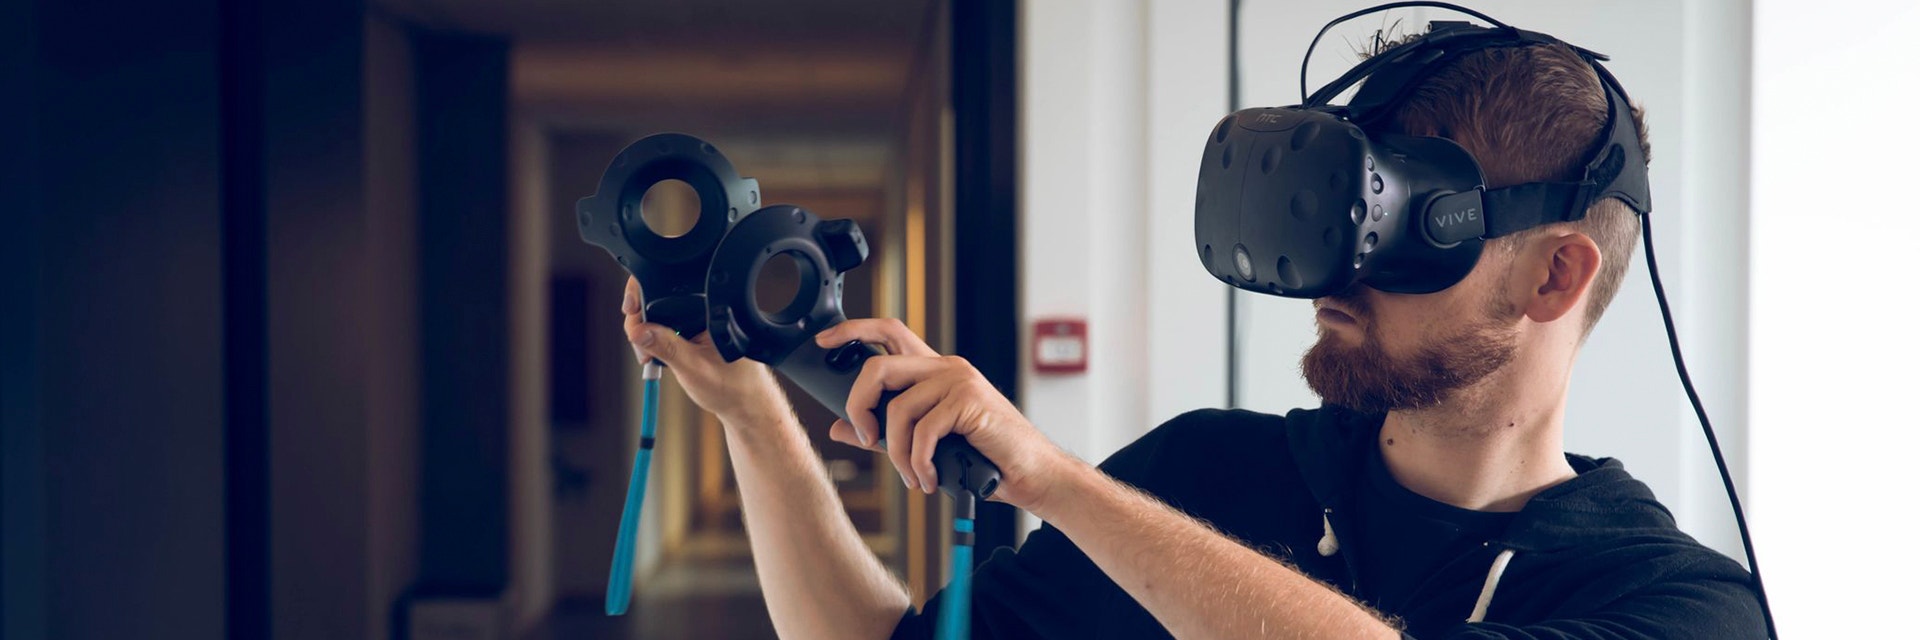 Man using virtual reality technology 